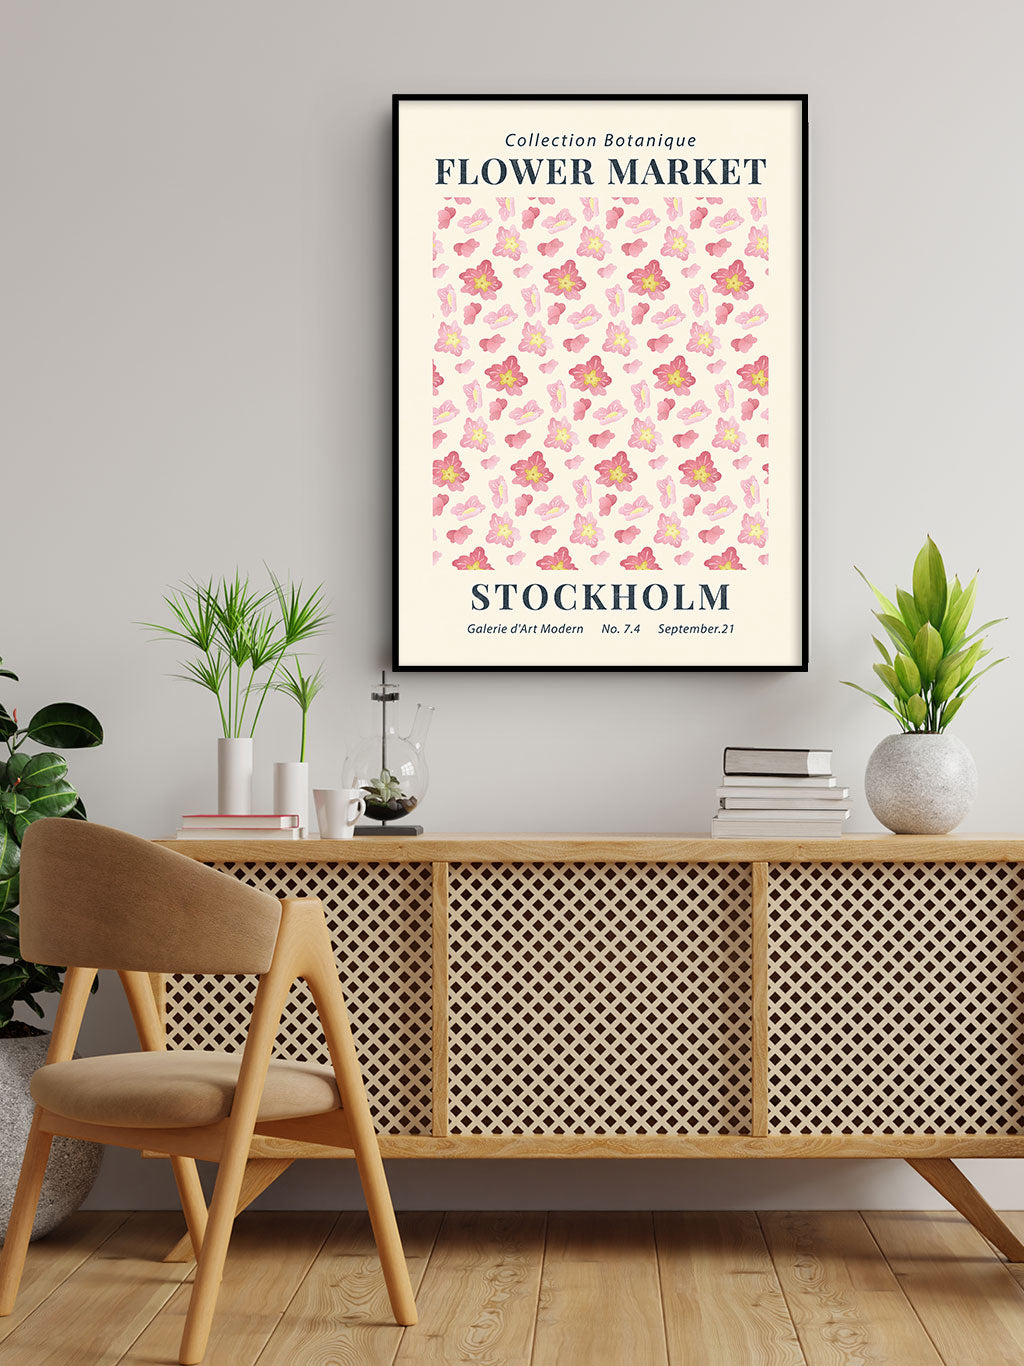 Flower Market Stockholm Poster